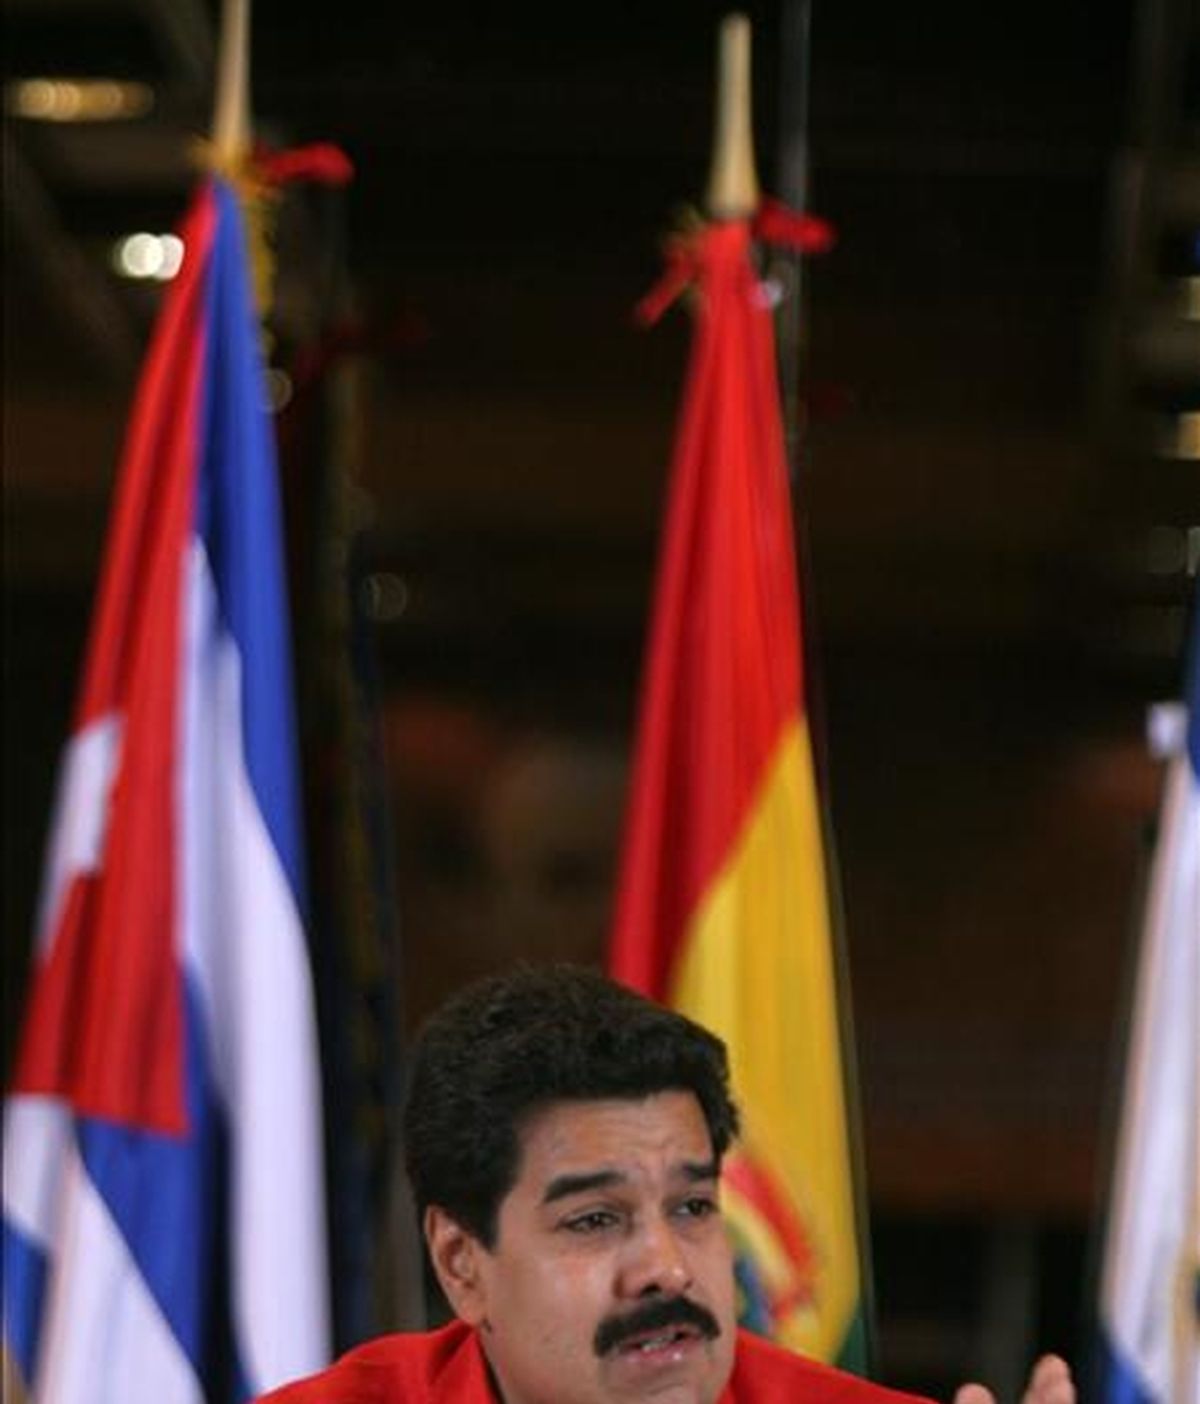 Las relaciones diplomáticas se normalizarán "en los próximos días", cuando "los dos embajadores" serán restablecidos en sus cargos", declaró Maduro. EFE/Archivo